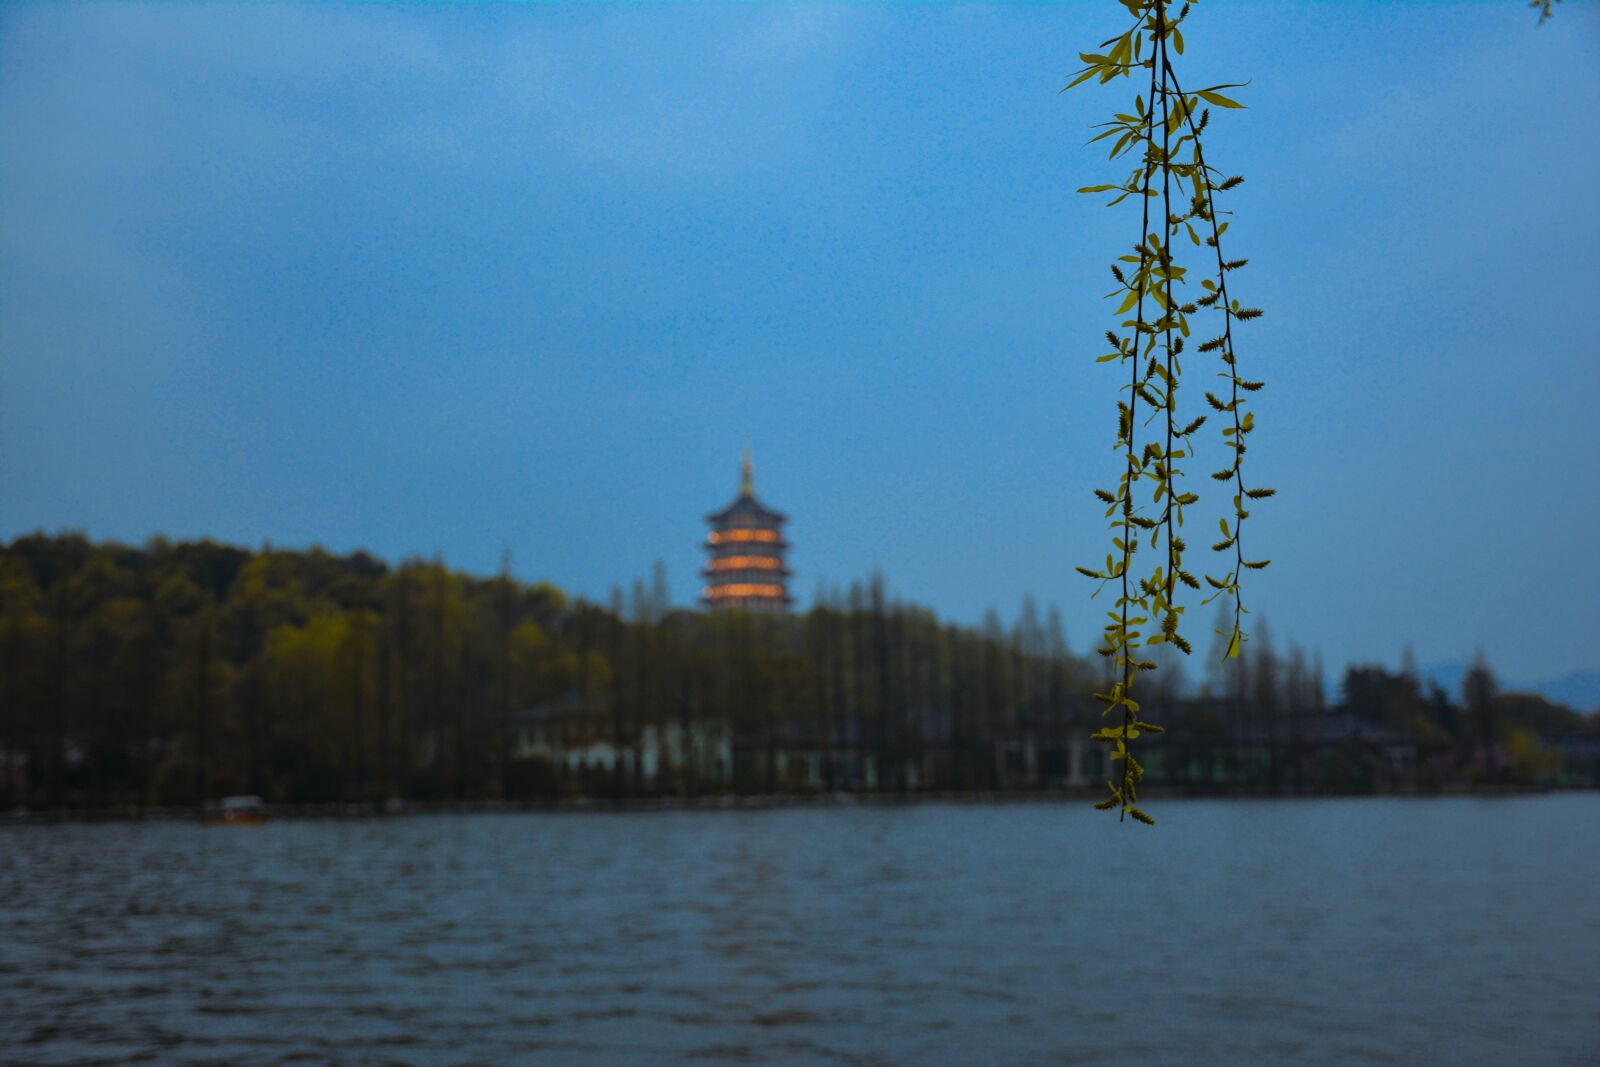 Nikon D7100 sample photo. Pagoda, west lake, weeping photography